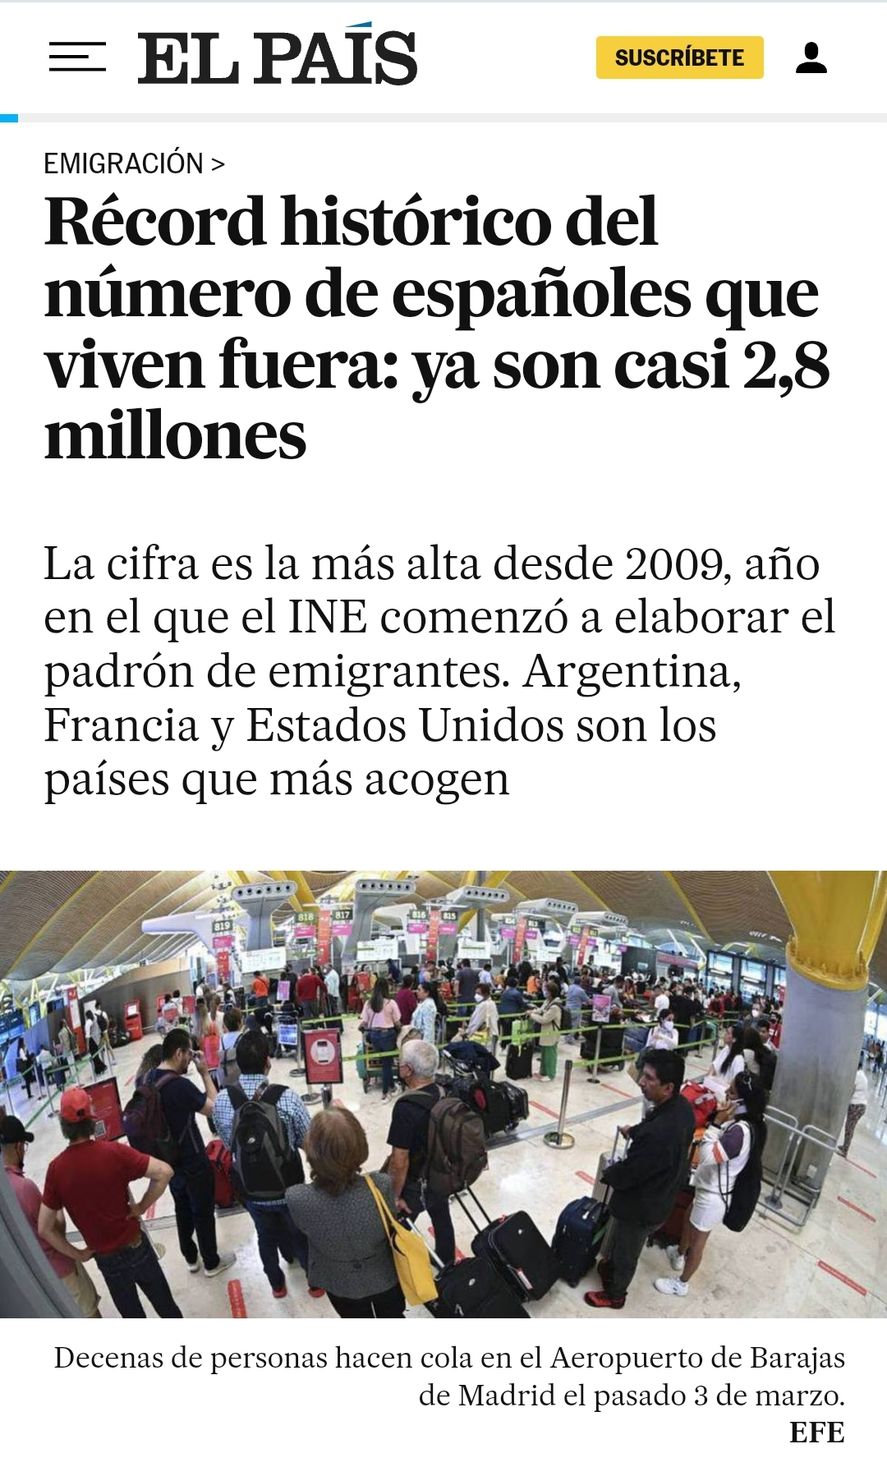 Los españoles eligen a Argentina para sus residencias permanentes como emigrados según informó el diario El País de Madrid 